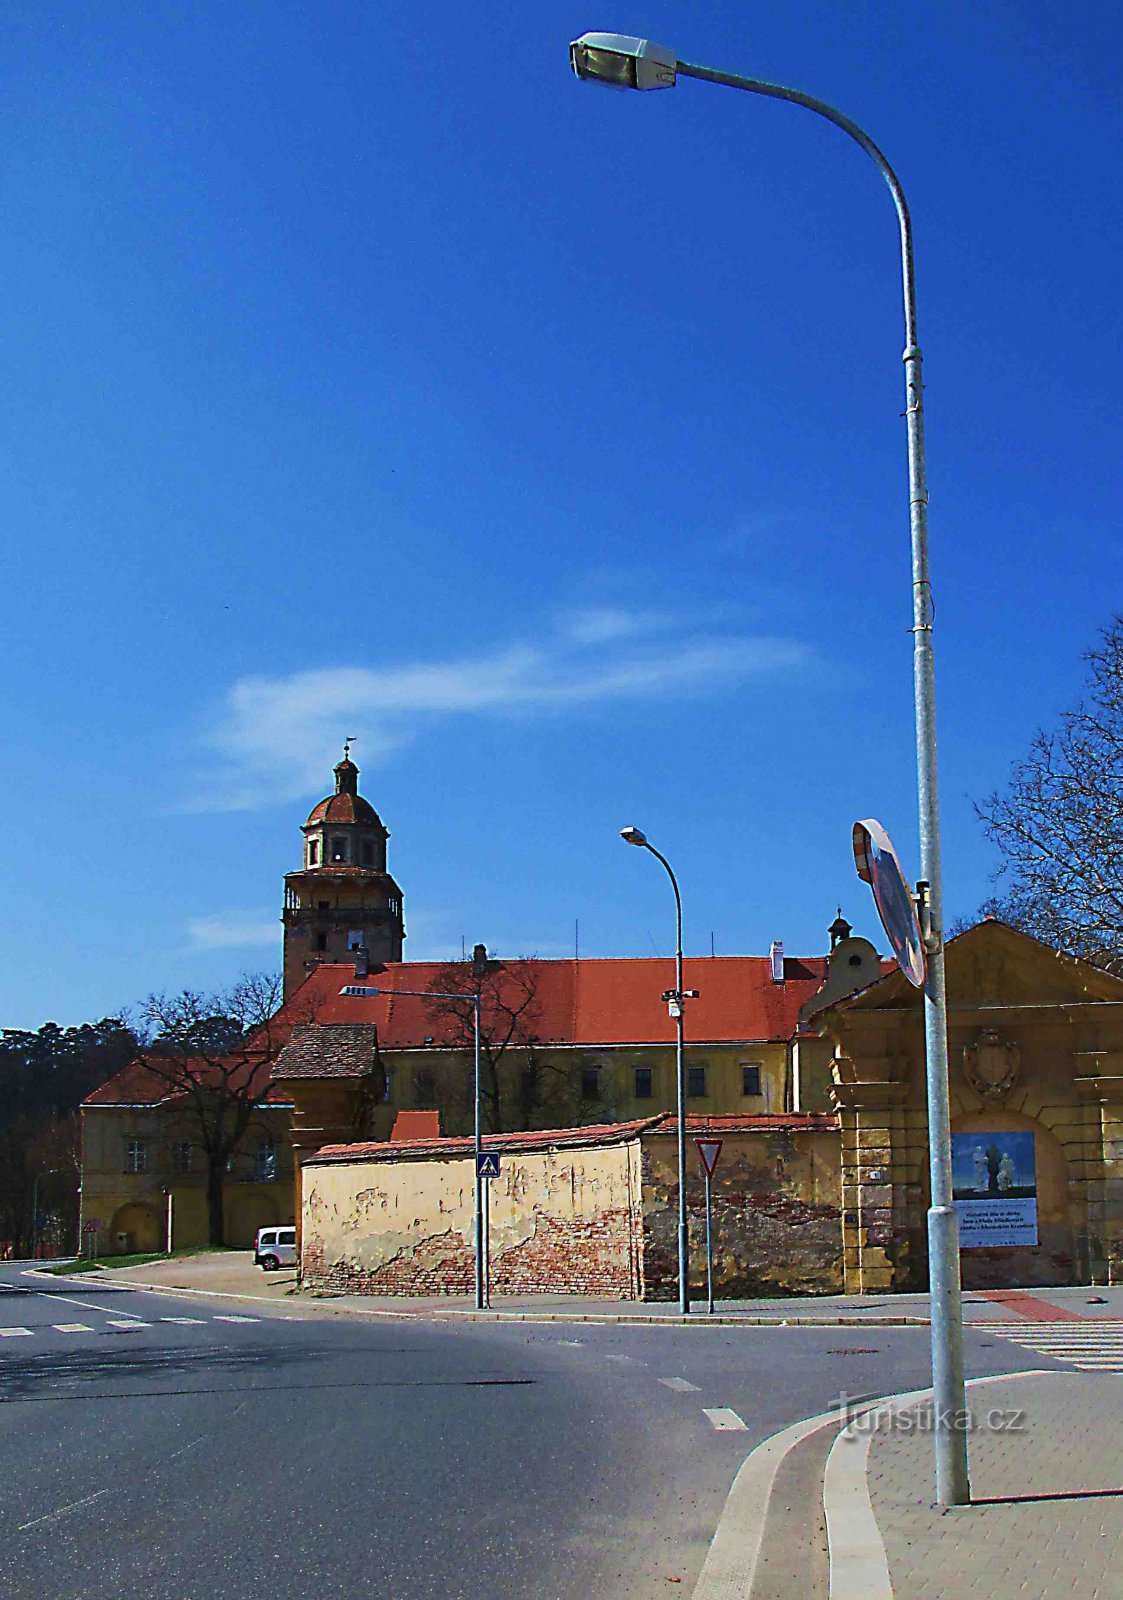 Khuôn viên lâu đài ở Moravské Krumlov